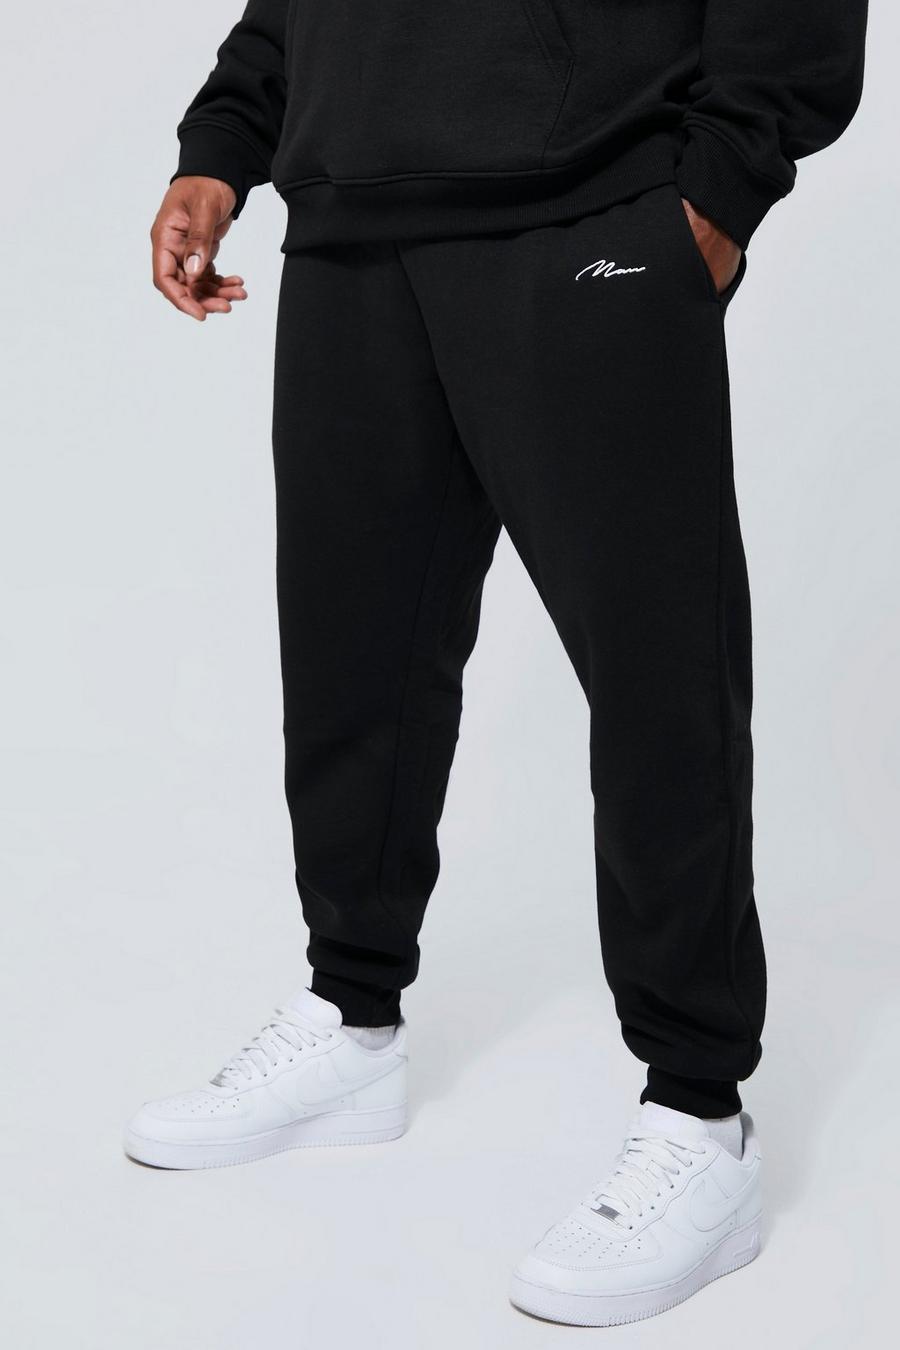 שחור nero מכנסי טרנינג בייסיק סקיני בסגנון דגמ'ח עם כיתוב Man, מידות גדולות